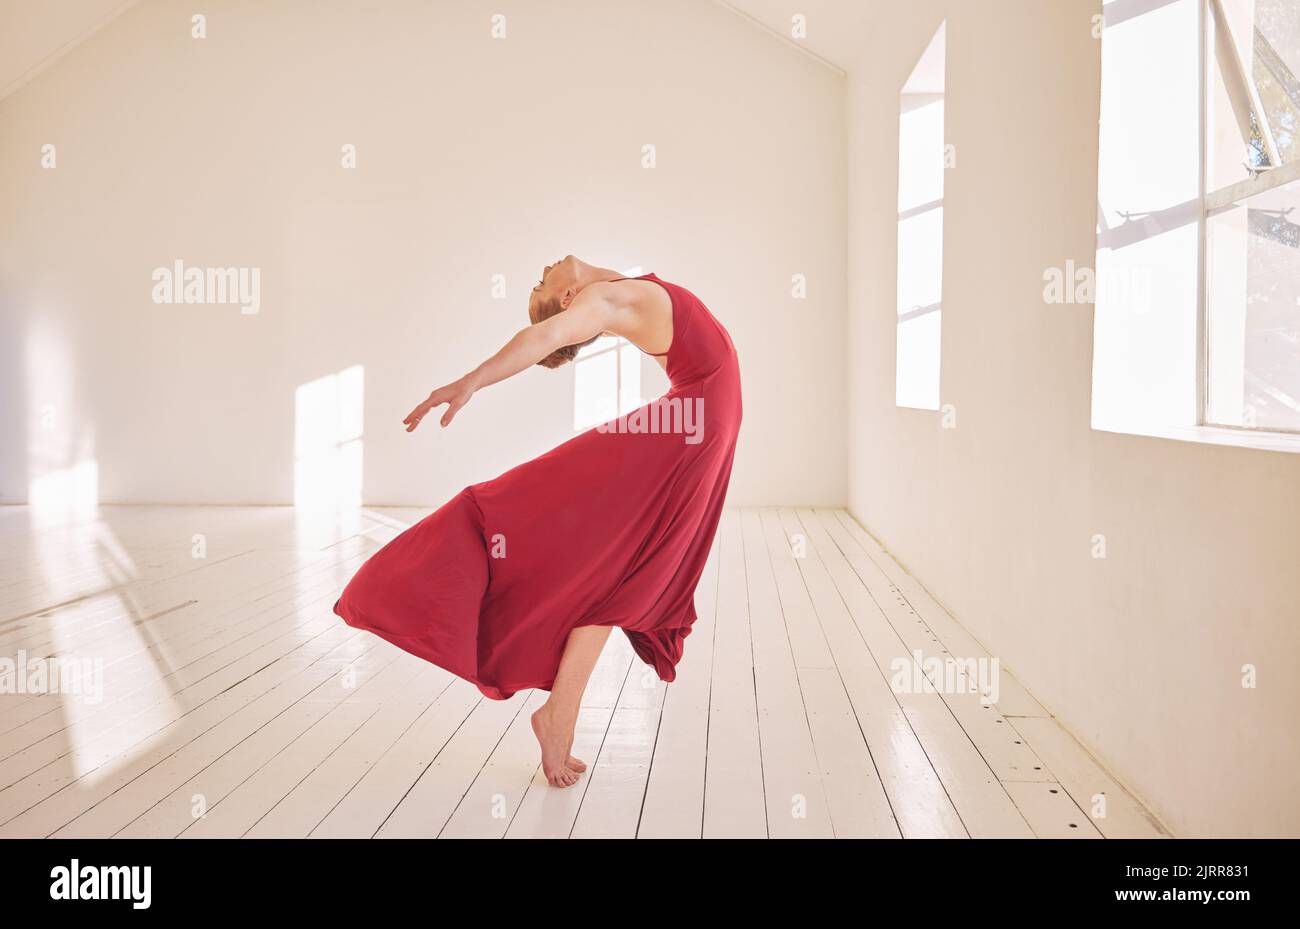 Liberté, énergie, ballet ou salle de bal formation de danseur en studio de danse, étirements et danse passionnée. Performance active d'une femme flexible Banque D'Images